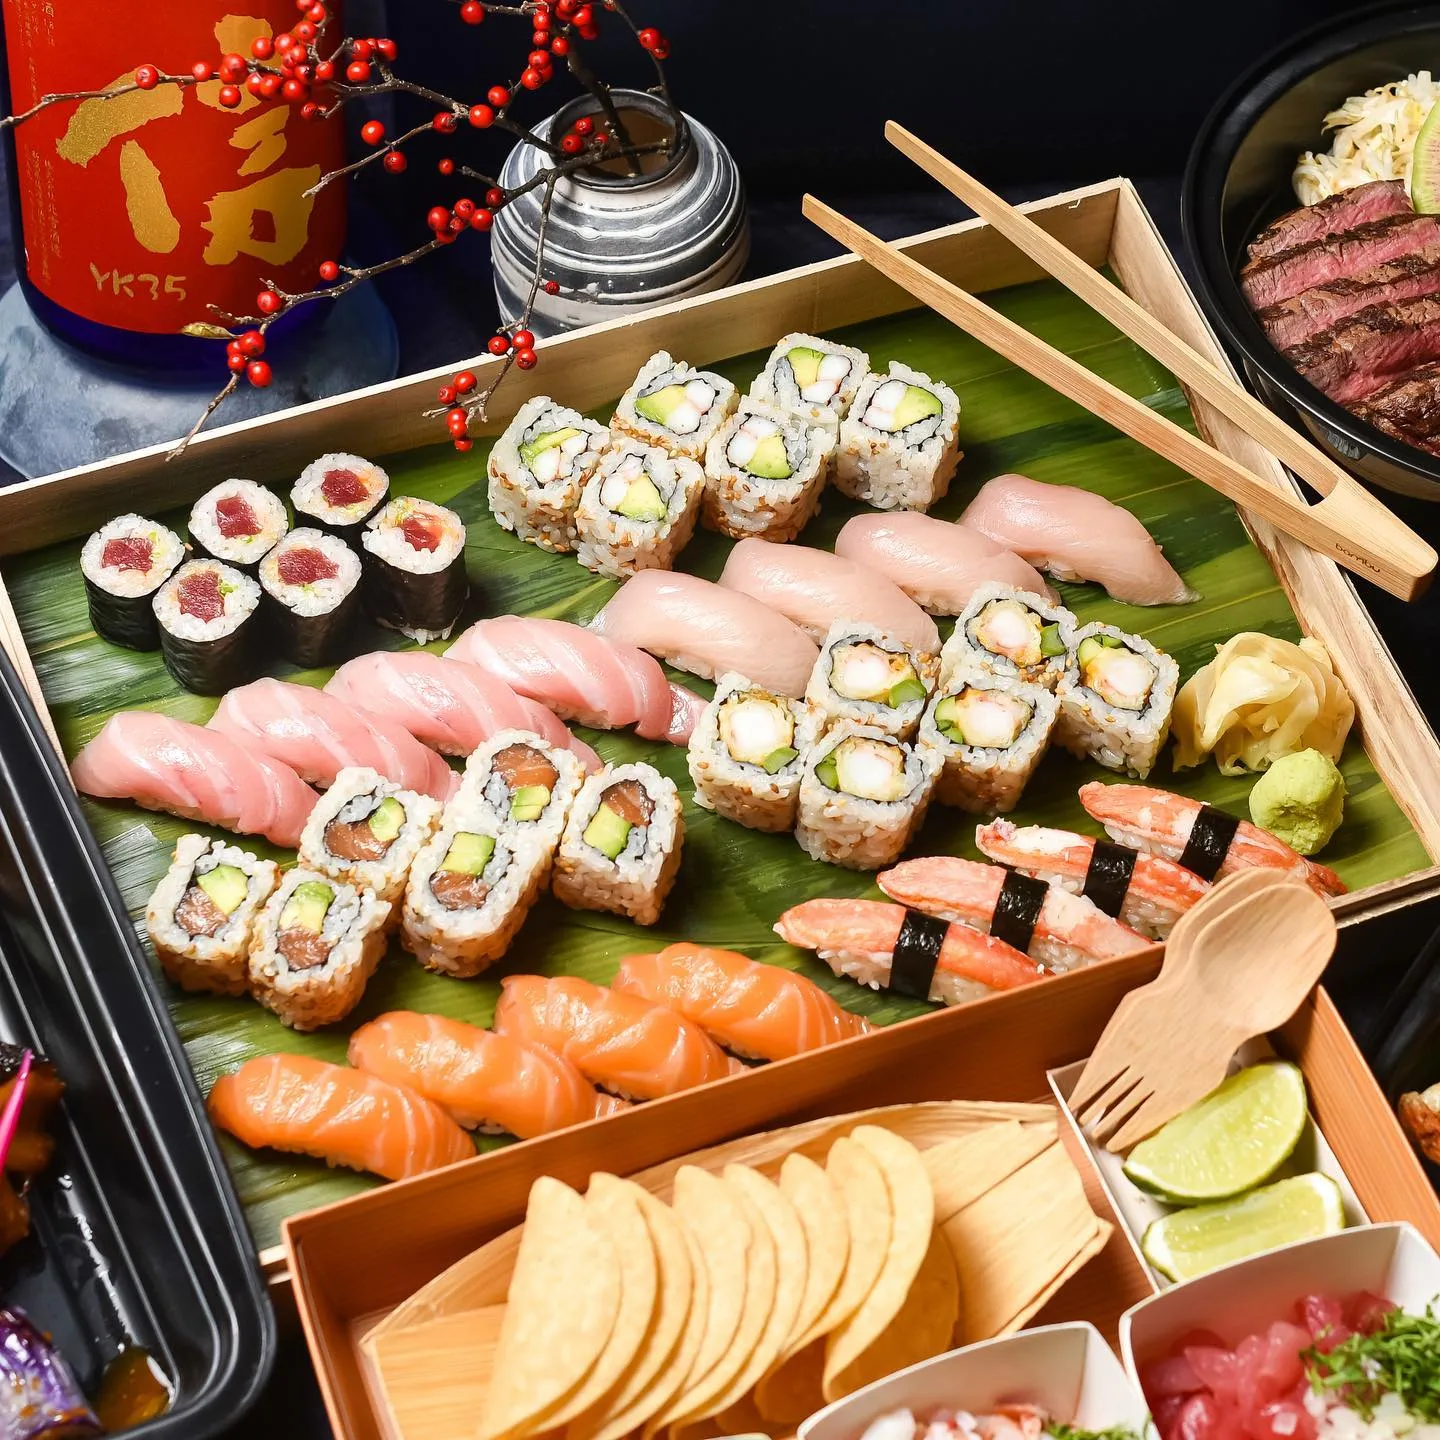 Nobu, Miami Nobu Tín dụng hình ảnh: Nhà hàng Nobu / Instagram Nobu là một trong những cái tên đã vươn cánh khắp các châu lục và quốc gia, bao gồm Mỹ, Châu Âu và Trung Đông, với đầu bếp Nobu Matsuhisa là người đứng đầu. Nhà hàng ở Miami có các lựa chọn bữa ăn sushi như một phần trong thực đơn Omakase, có giá khoảng 200 USD (khoảng 16.000 INR). Tuy nhiên, nó có một loạt các món ăn ngon như một phần của thực đơn tinh tế của Nhật Bản.